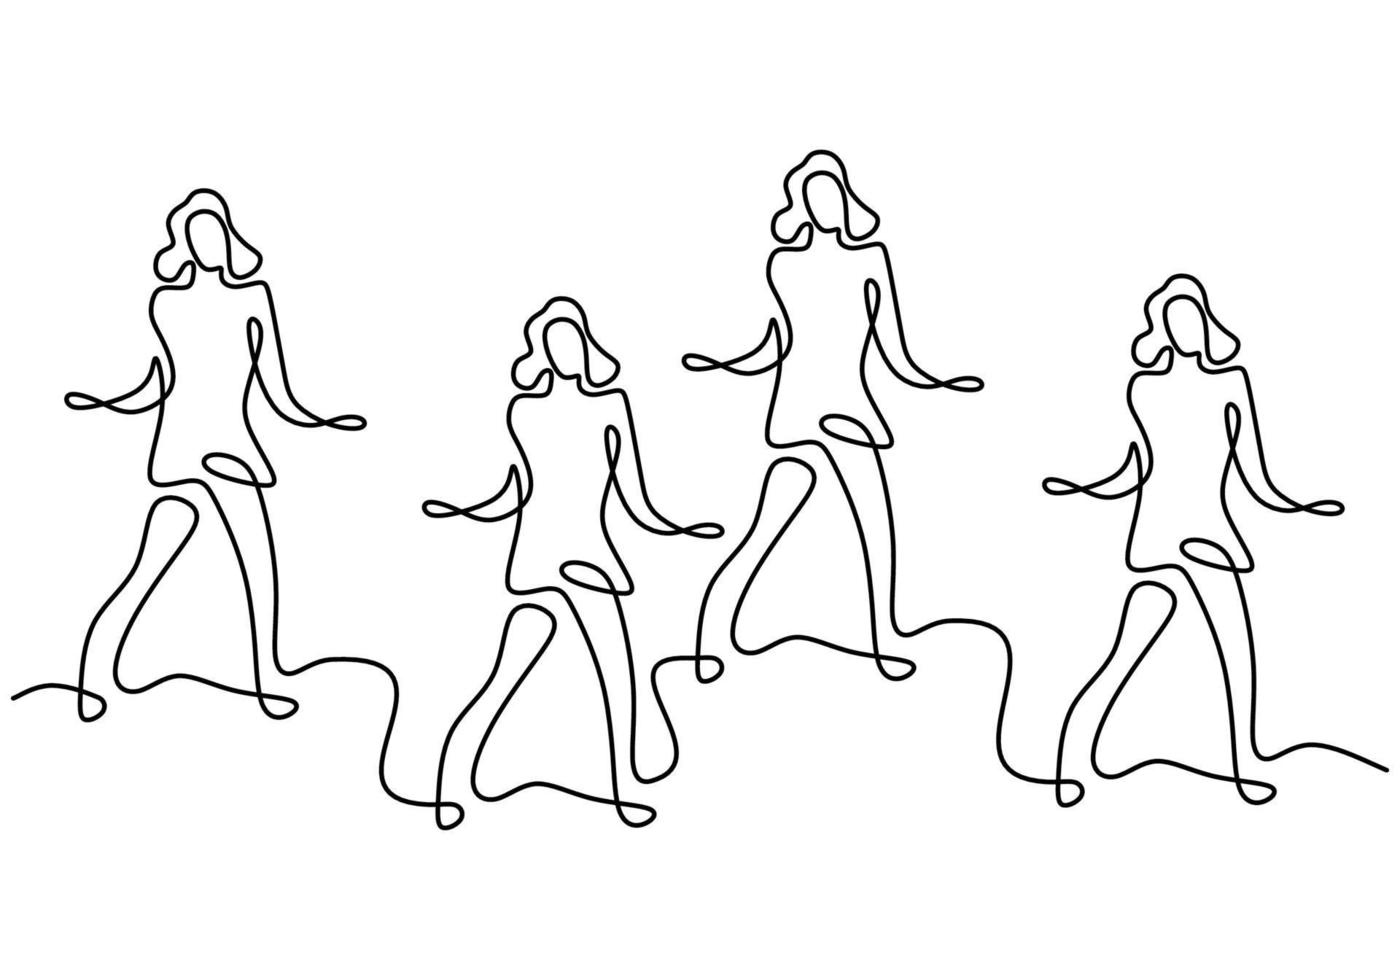 kontinuierliche Strichzeichnung einer Gruppe von Mädchen im Zumba-Tanz. vier energetische junge Frauen üben Tanz isoliert auf weißem Hintergrund. Tanzsport und gesundes Lifestyle-Konzept. Vektorillustration vektor